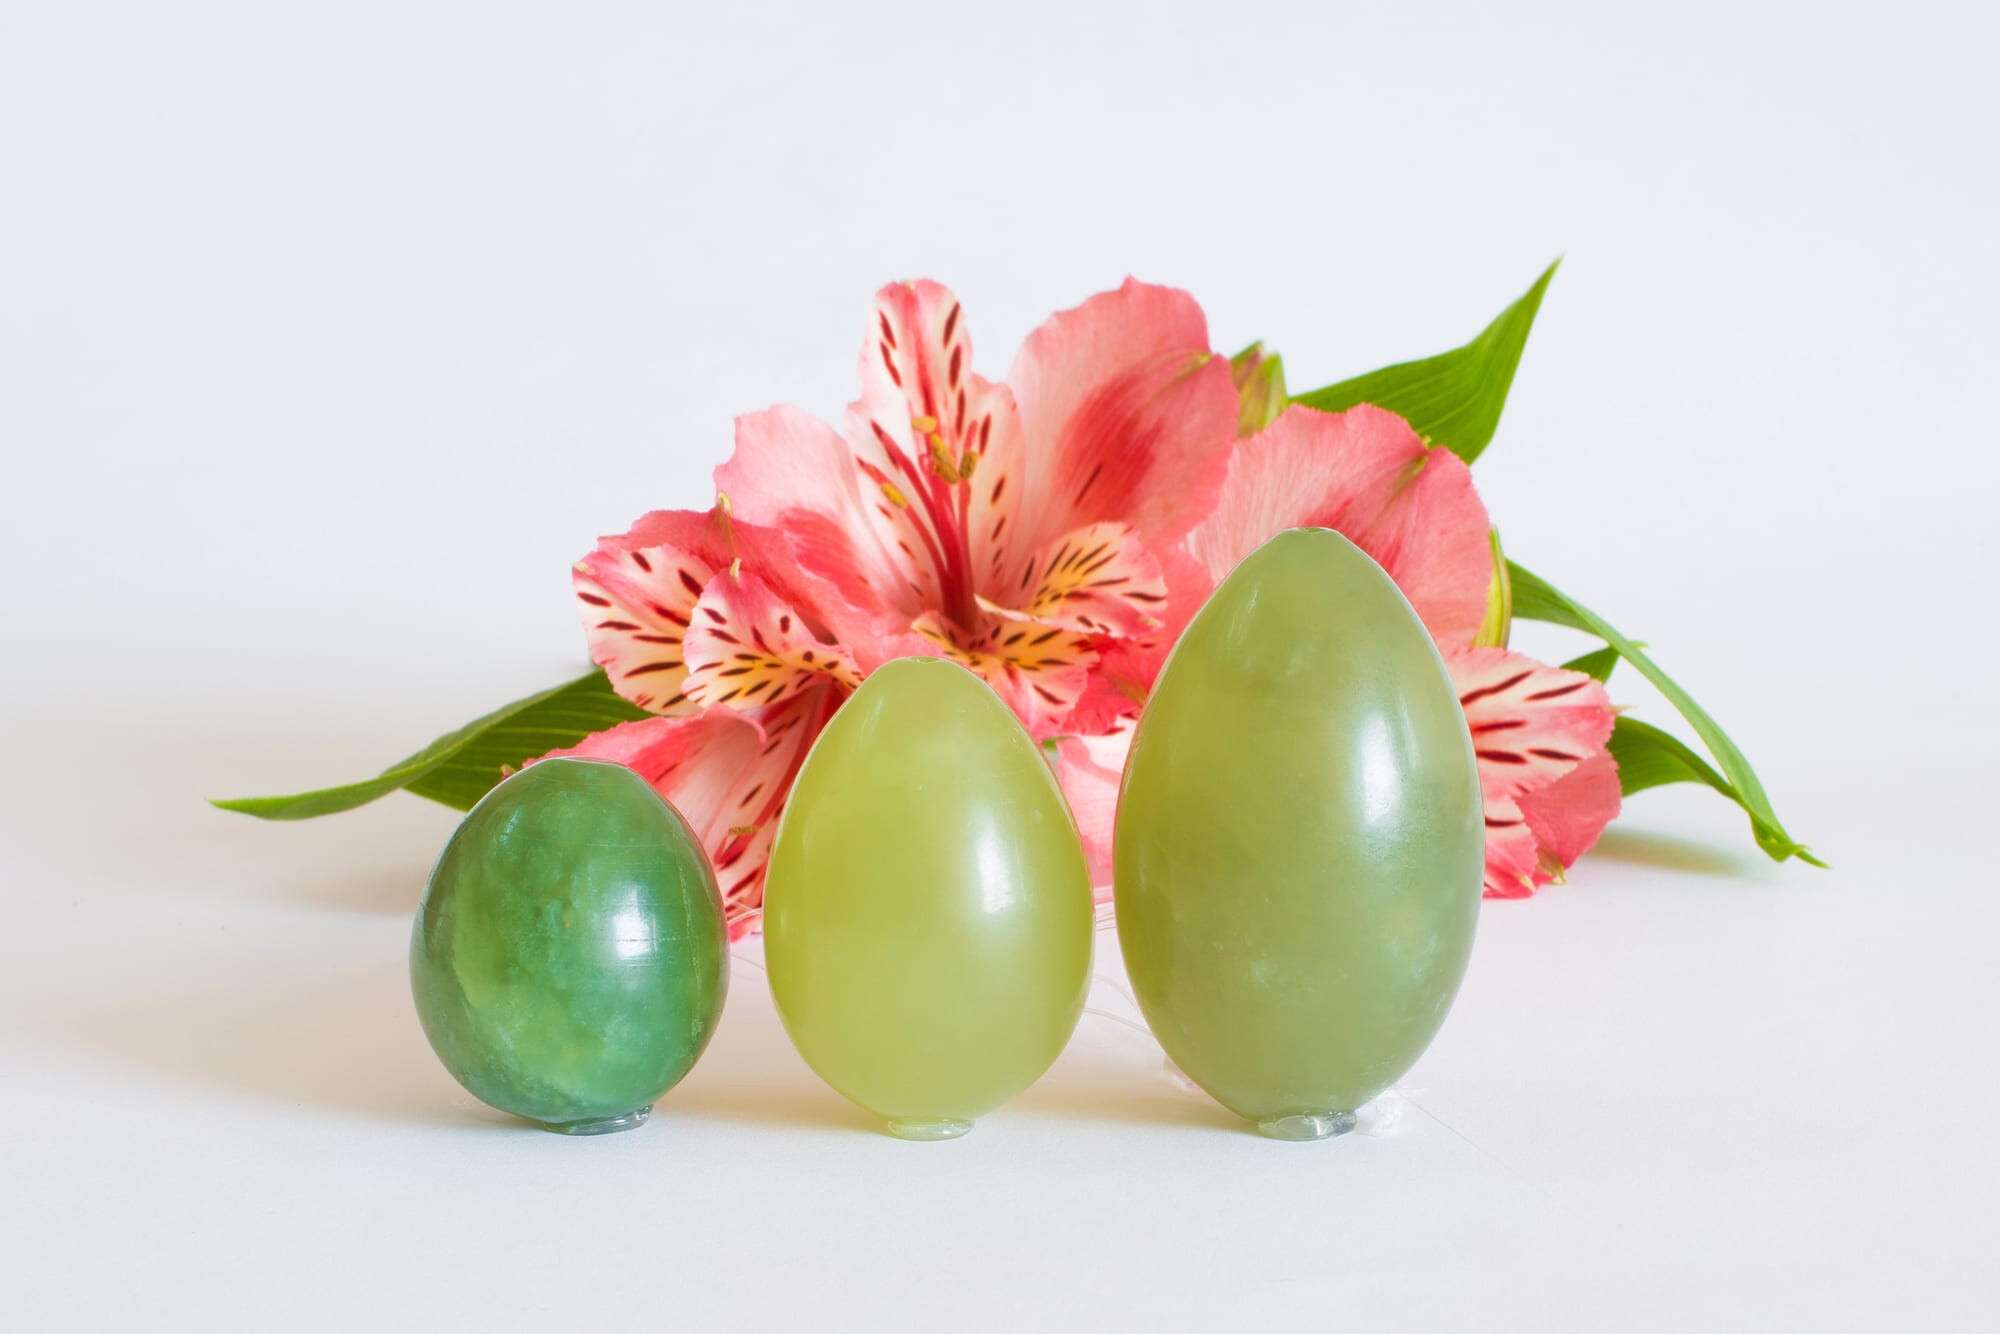 Jade eggs stand near a pink flower